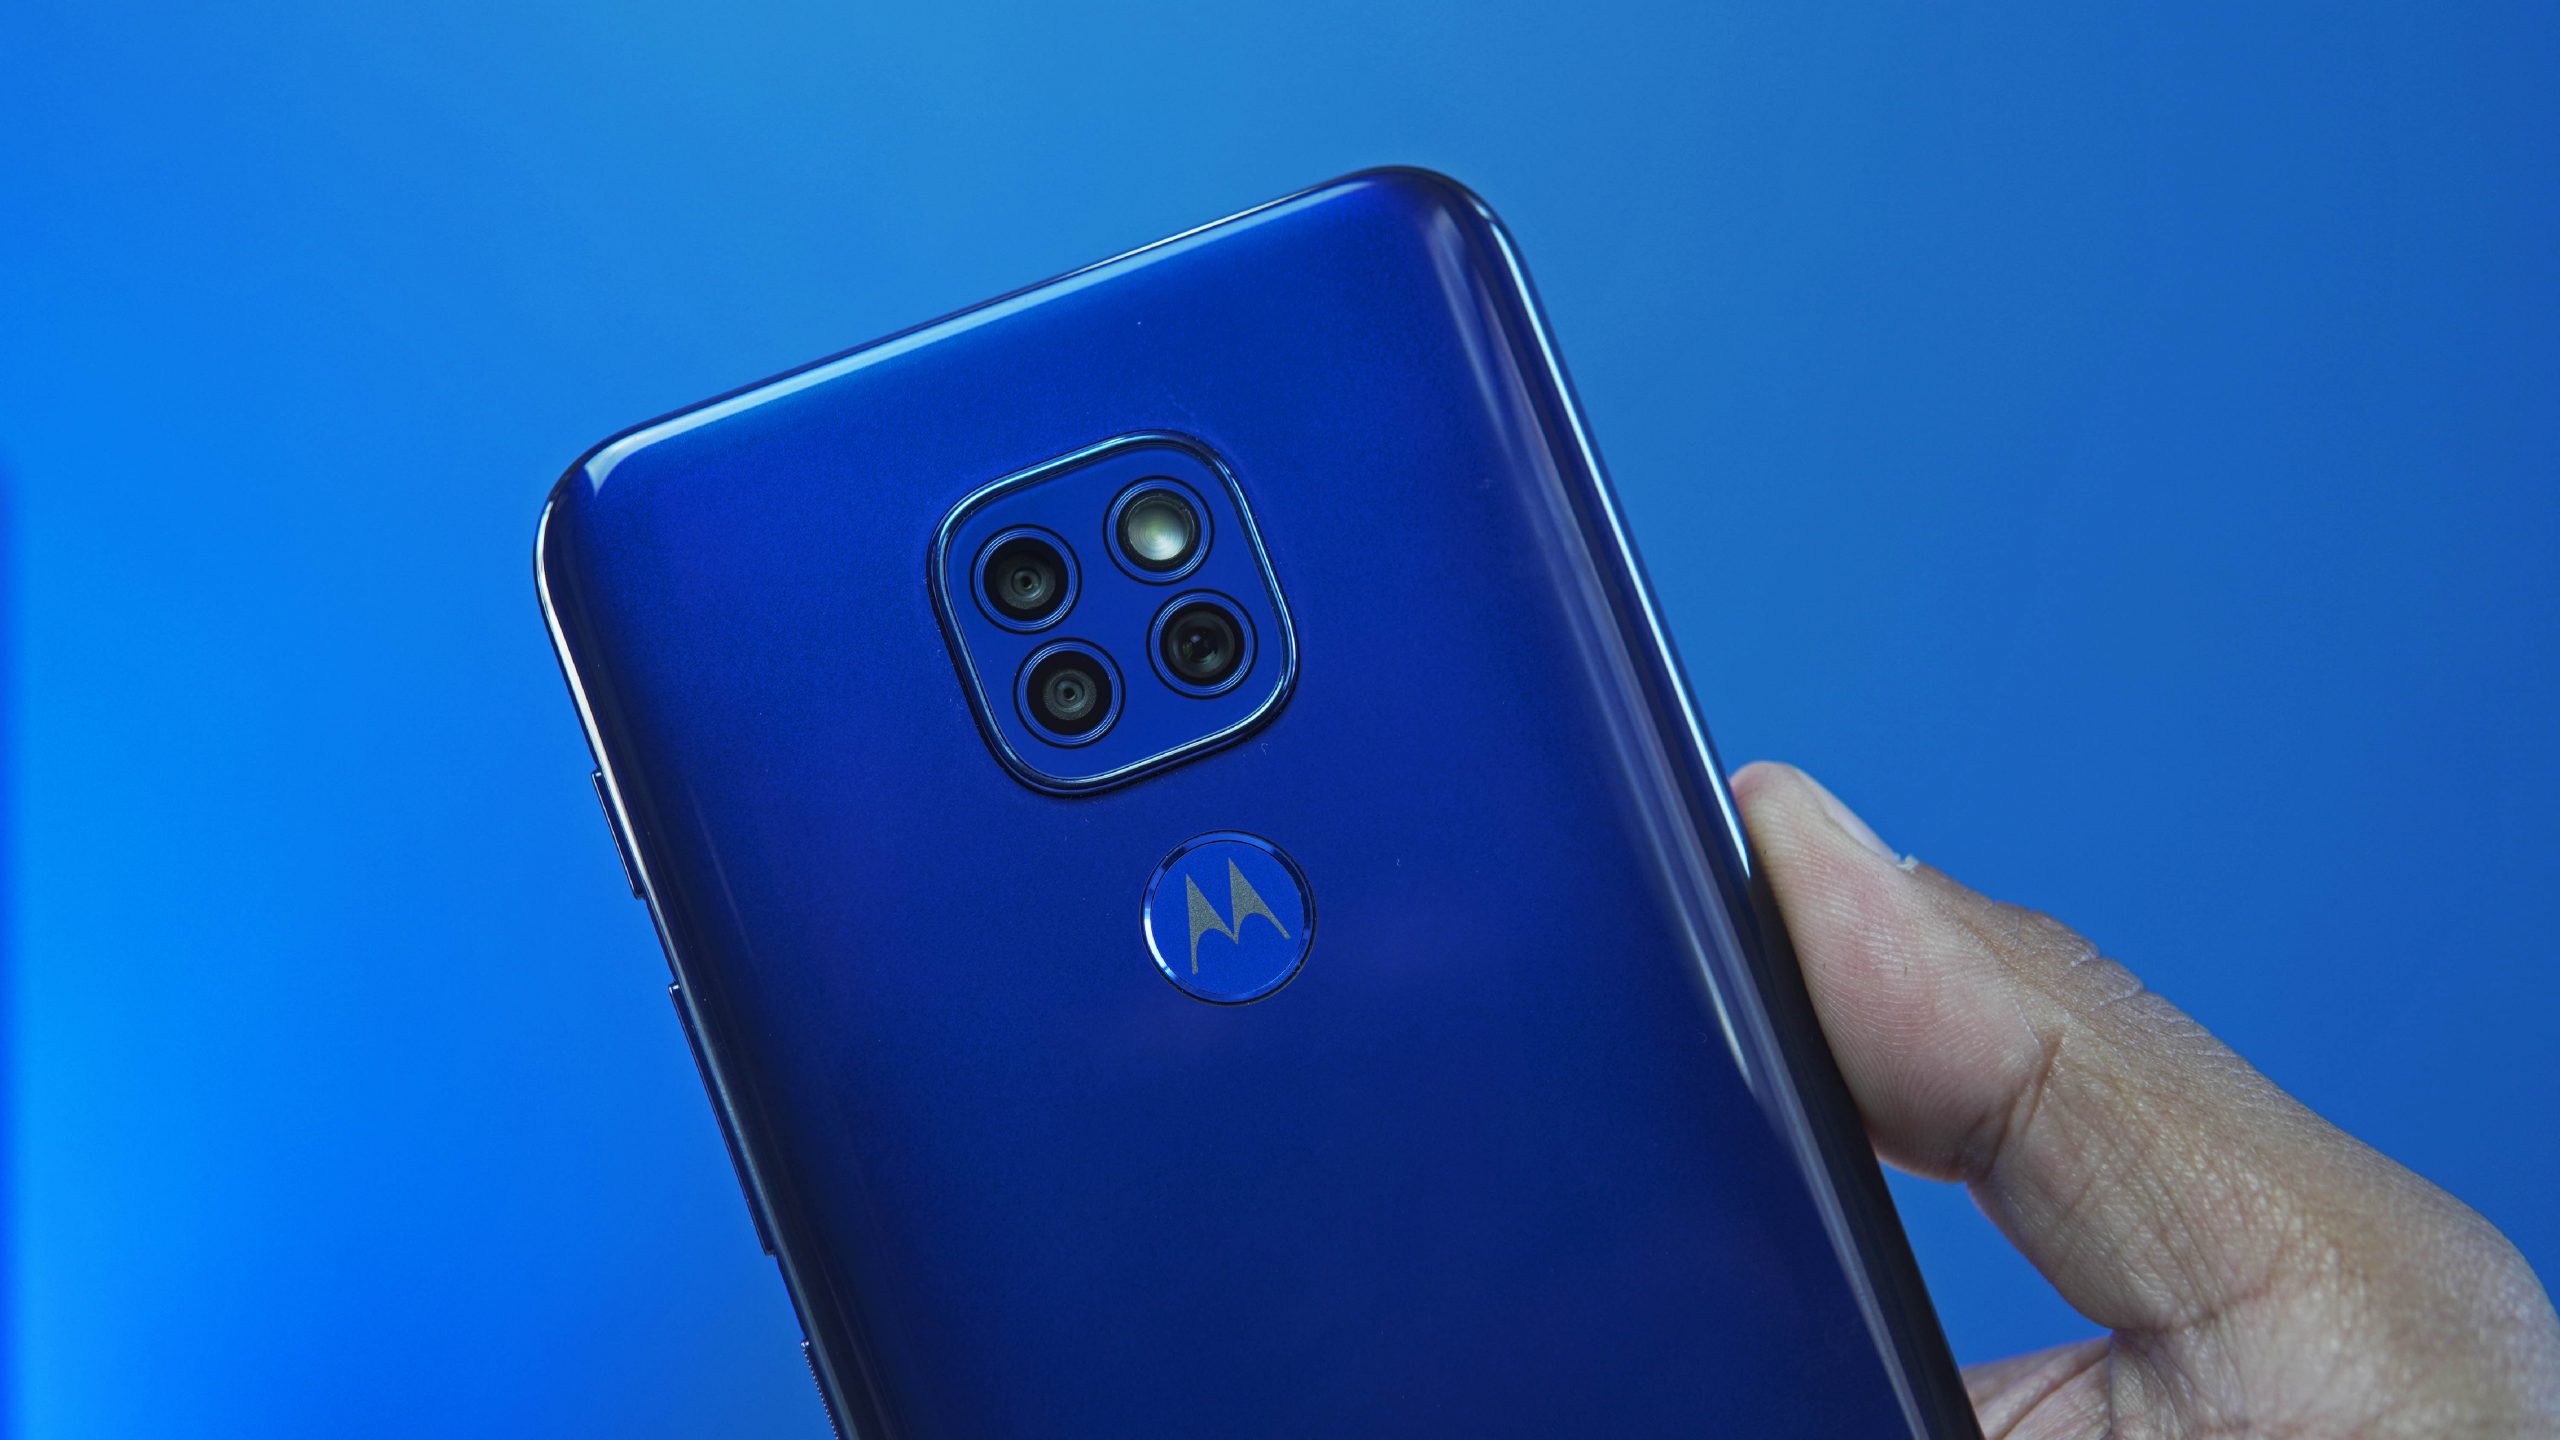 Motorola Moto G9 Play Rear Camera